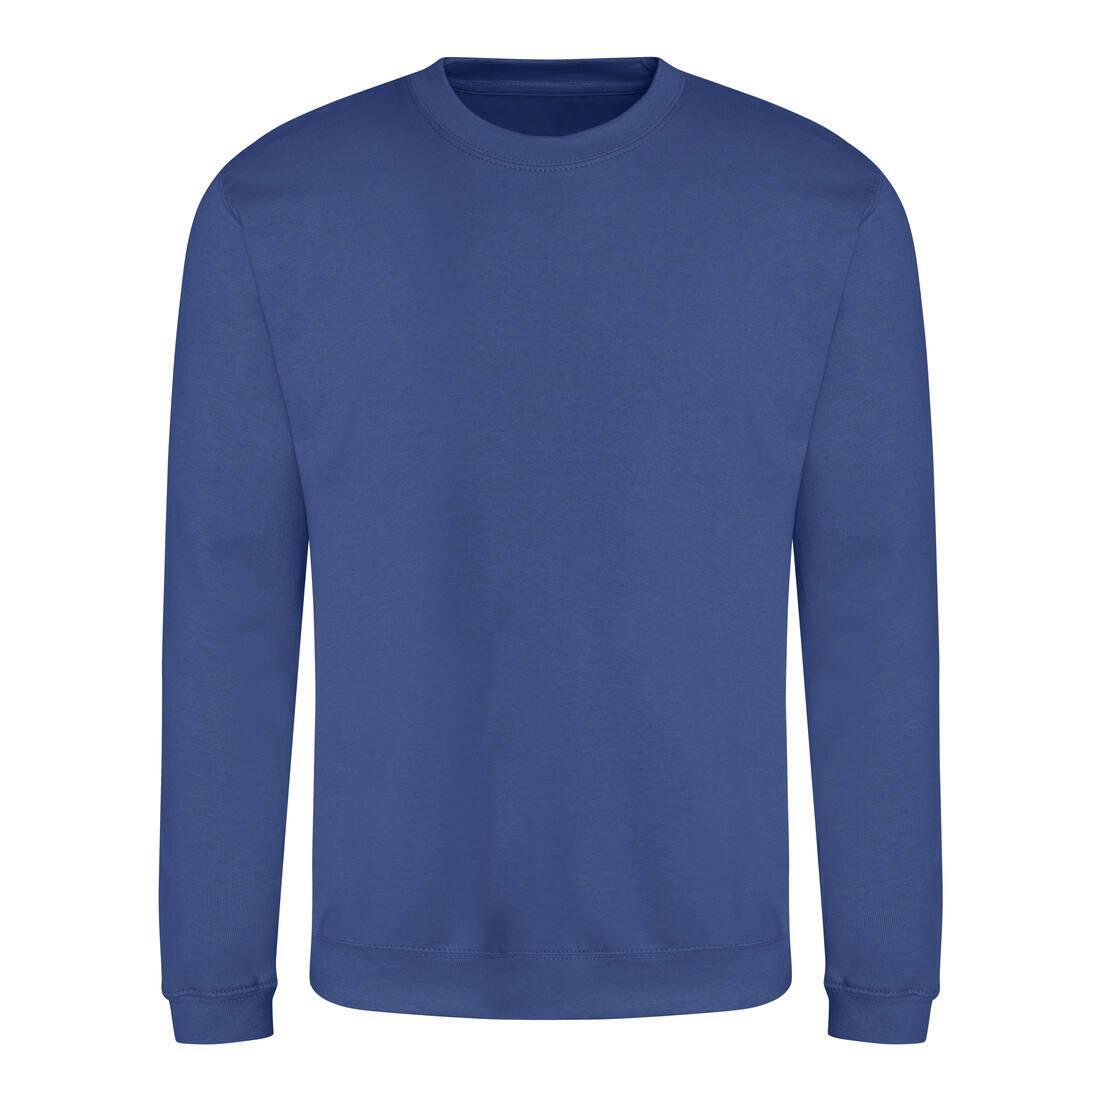 Sweater voor heren royal blauw Just Hoods te personaliseren